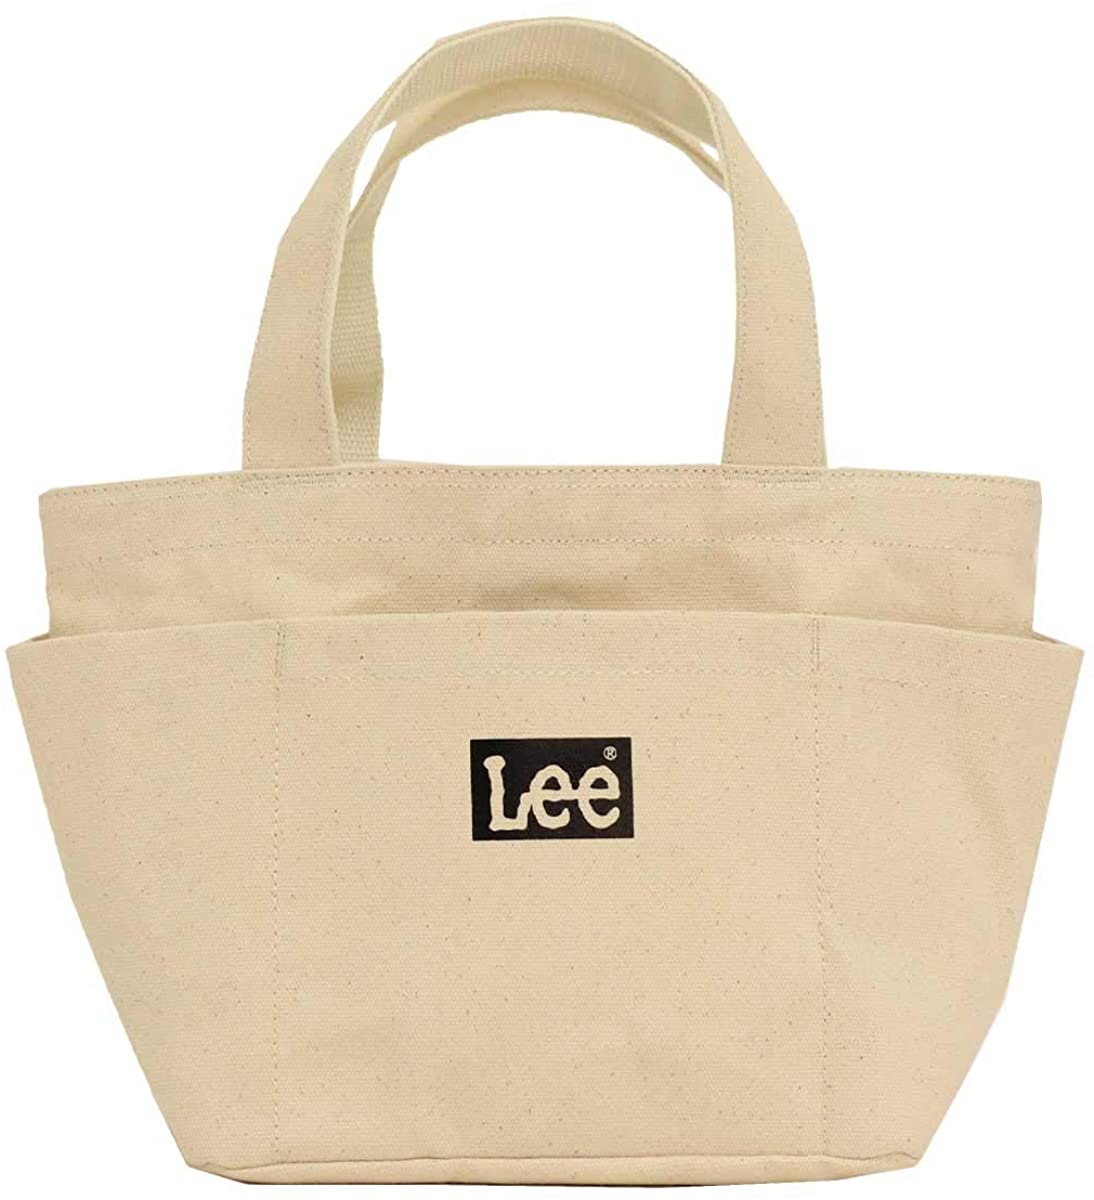 Lee(リー) ミニトートバッグ